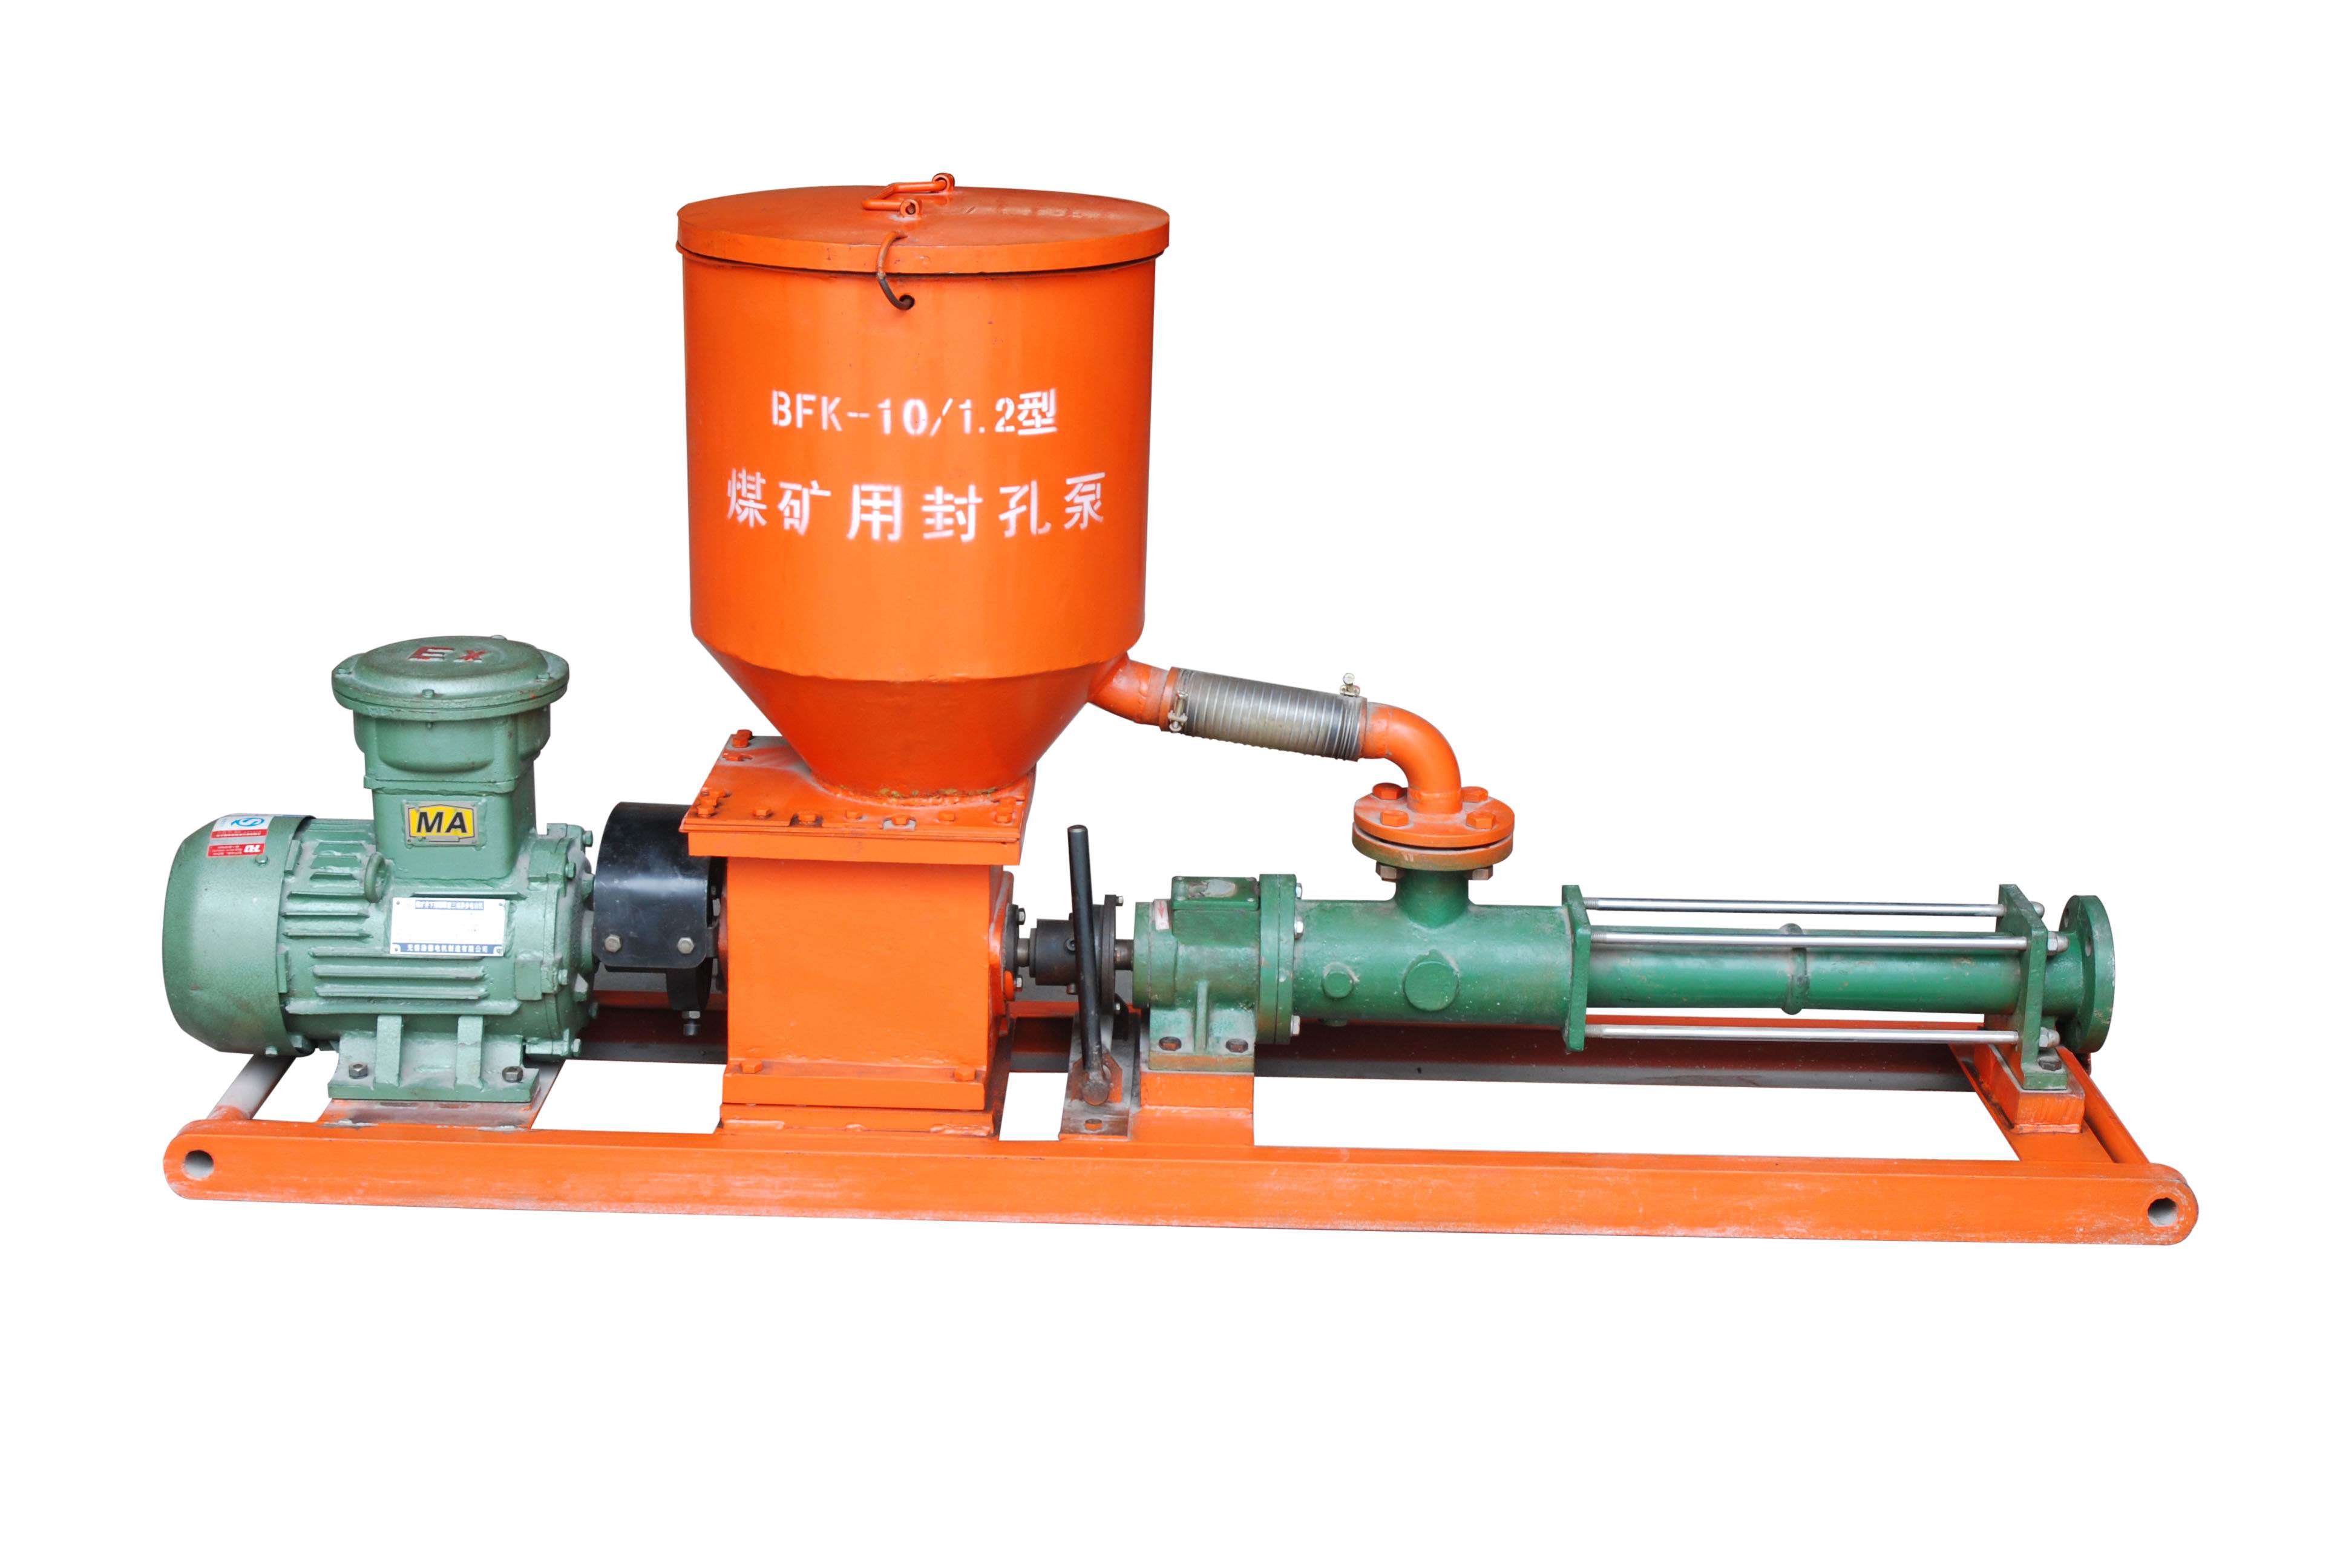 供应用于钻孔的BFK-10/1.2煤矿用封孔泵